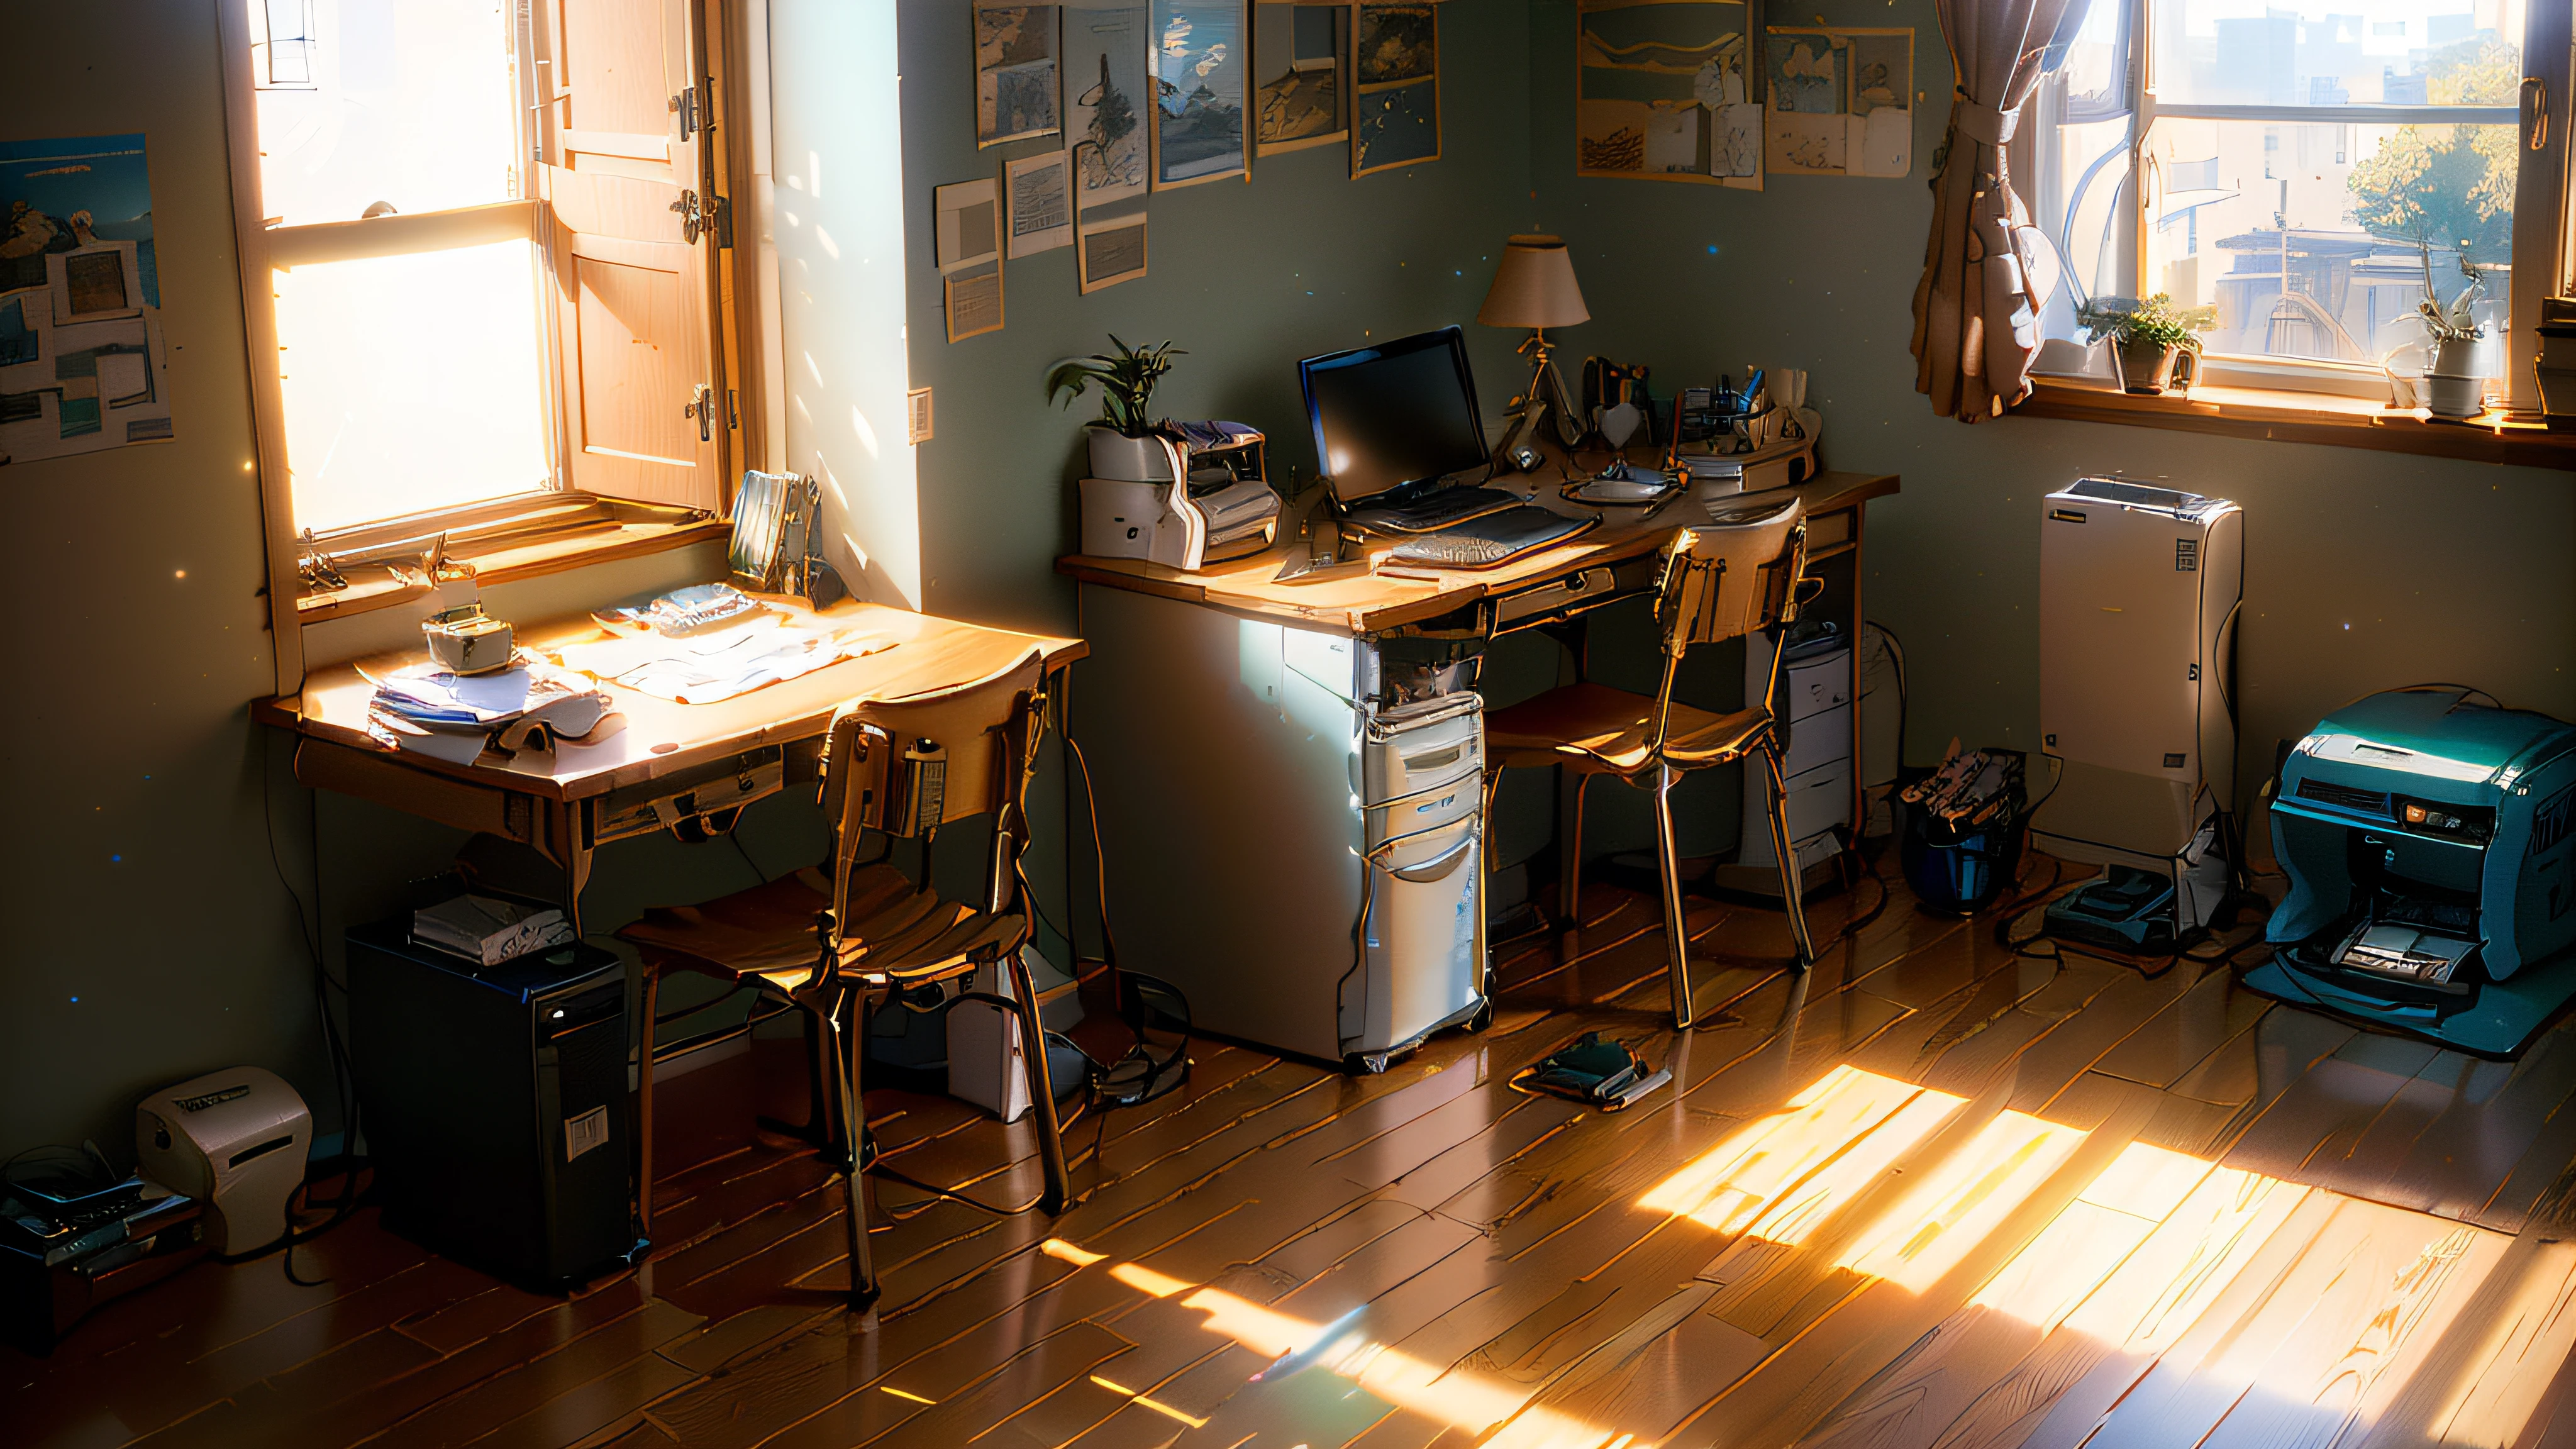 部屋にはパソコンとプリンターが置かれた机がありました, スタジオジブリ 日光, Realistic 午後の照明, 映画のような朝の光, 午後の照明, オクタンによるレンダリング. by Makoto Shinkai, nice 午後の照明, ソニーA7Rカメラで撮影, スタジオグリブリー 新海誠, 朝の照明, フォトリアリスティックな部屋, リアルな照明, early 朝の照明